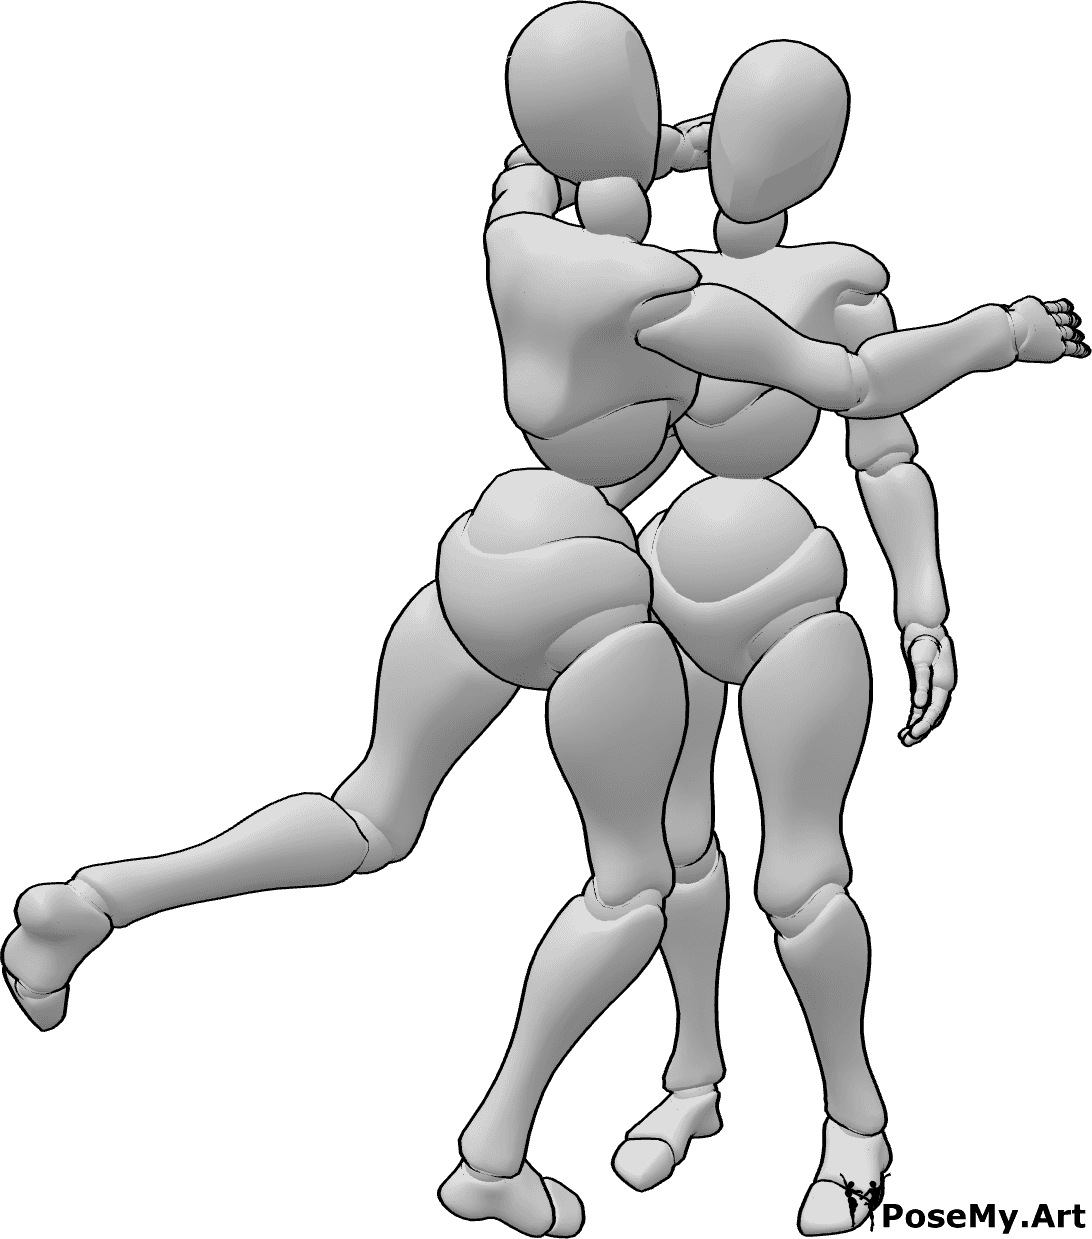 Referência de poses- Pose de abraço inesperada - A mulher abraça a mulher com entusiasmo e de forma inesperada